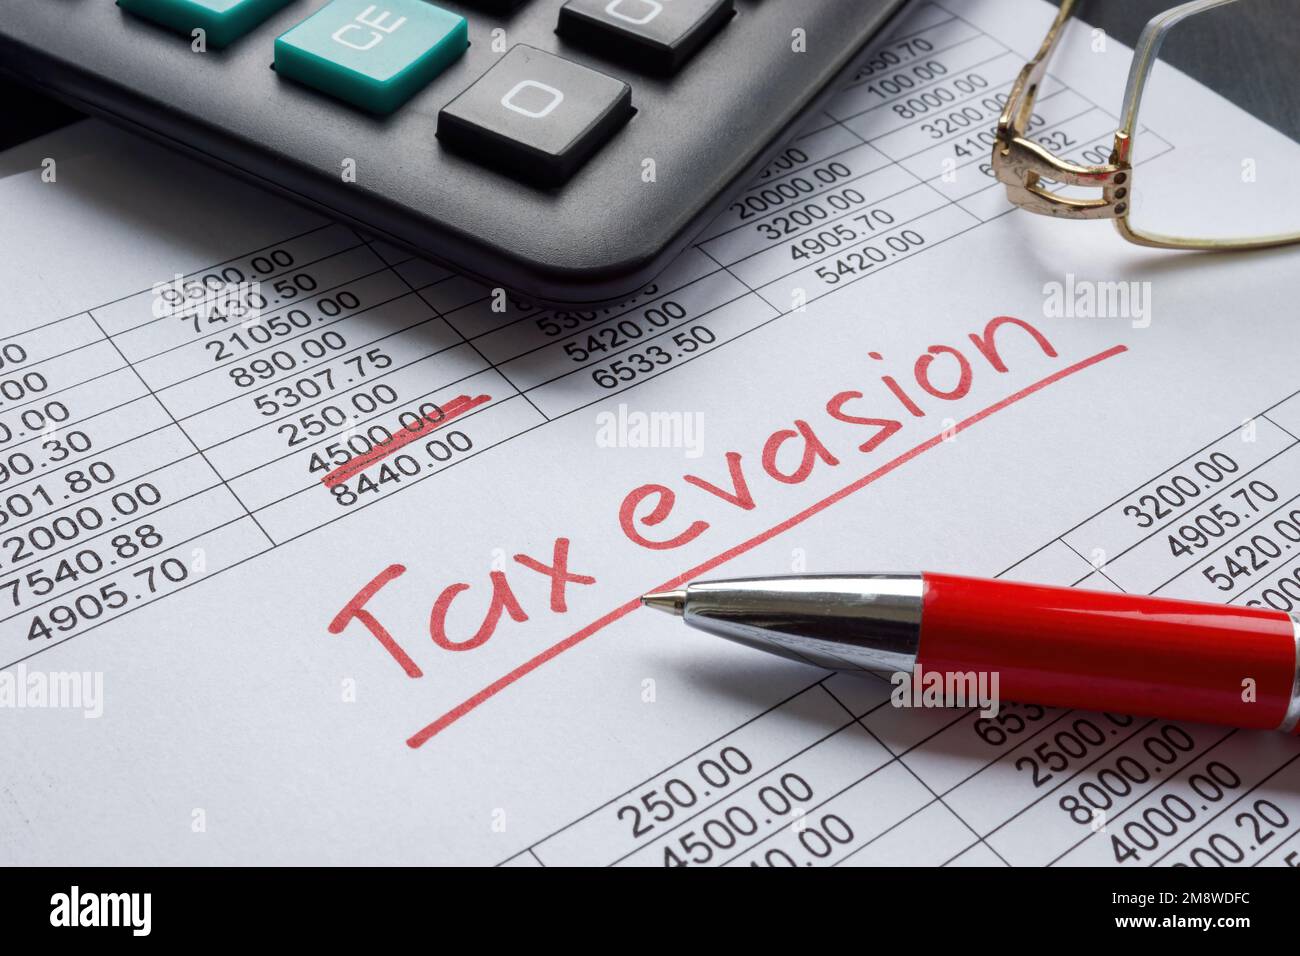 Handgeschriebenes Schild zur Steuerhinterziehung auf den Finanzdaten. Stockfoto